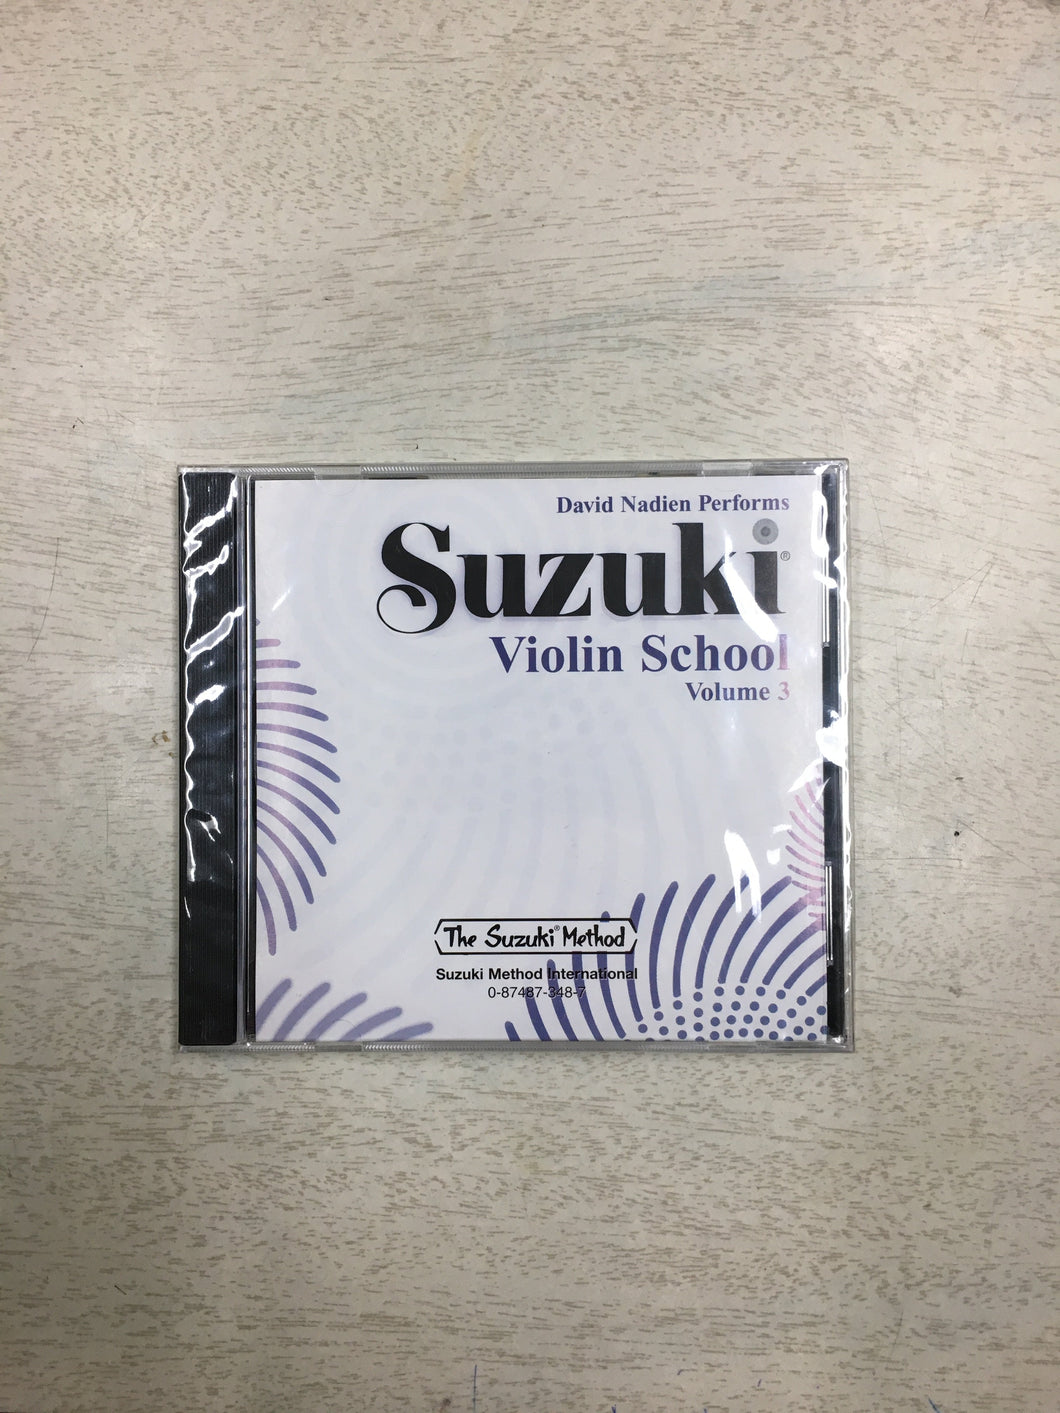 Suzuki Violin School, Volume 3 CD Performed by David Nadien